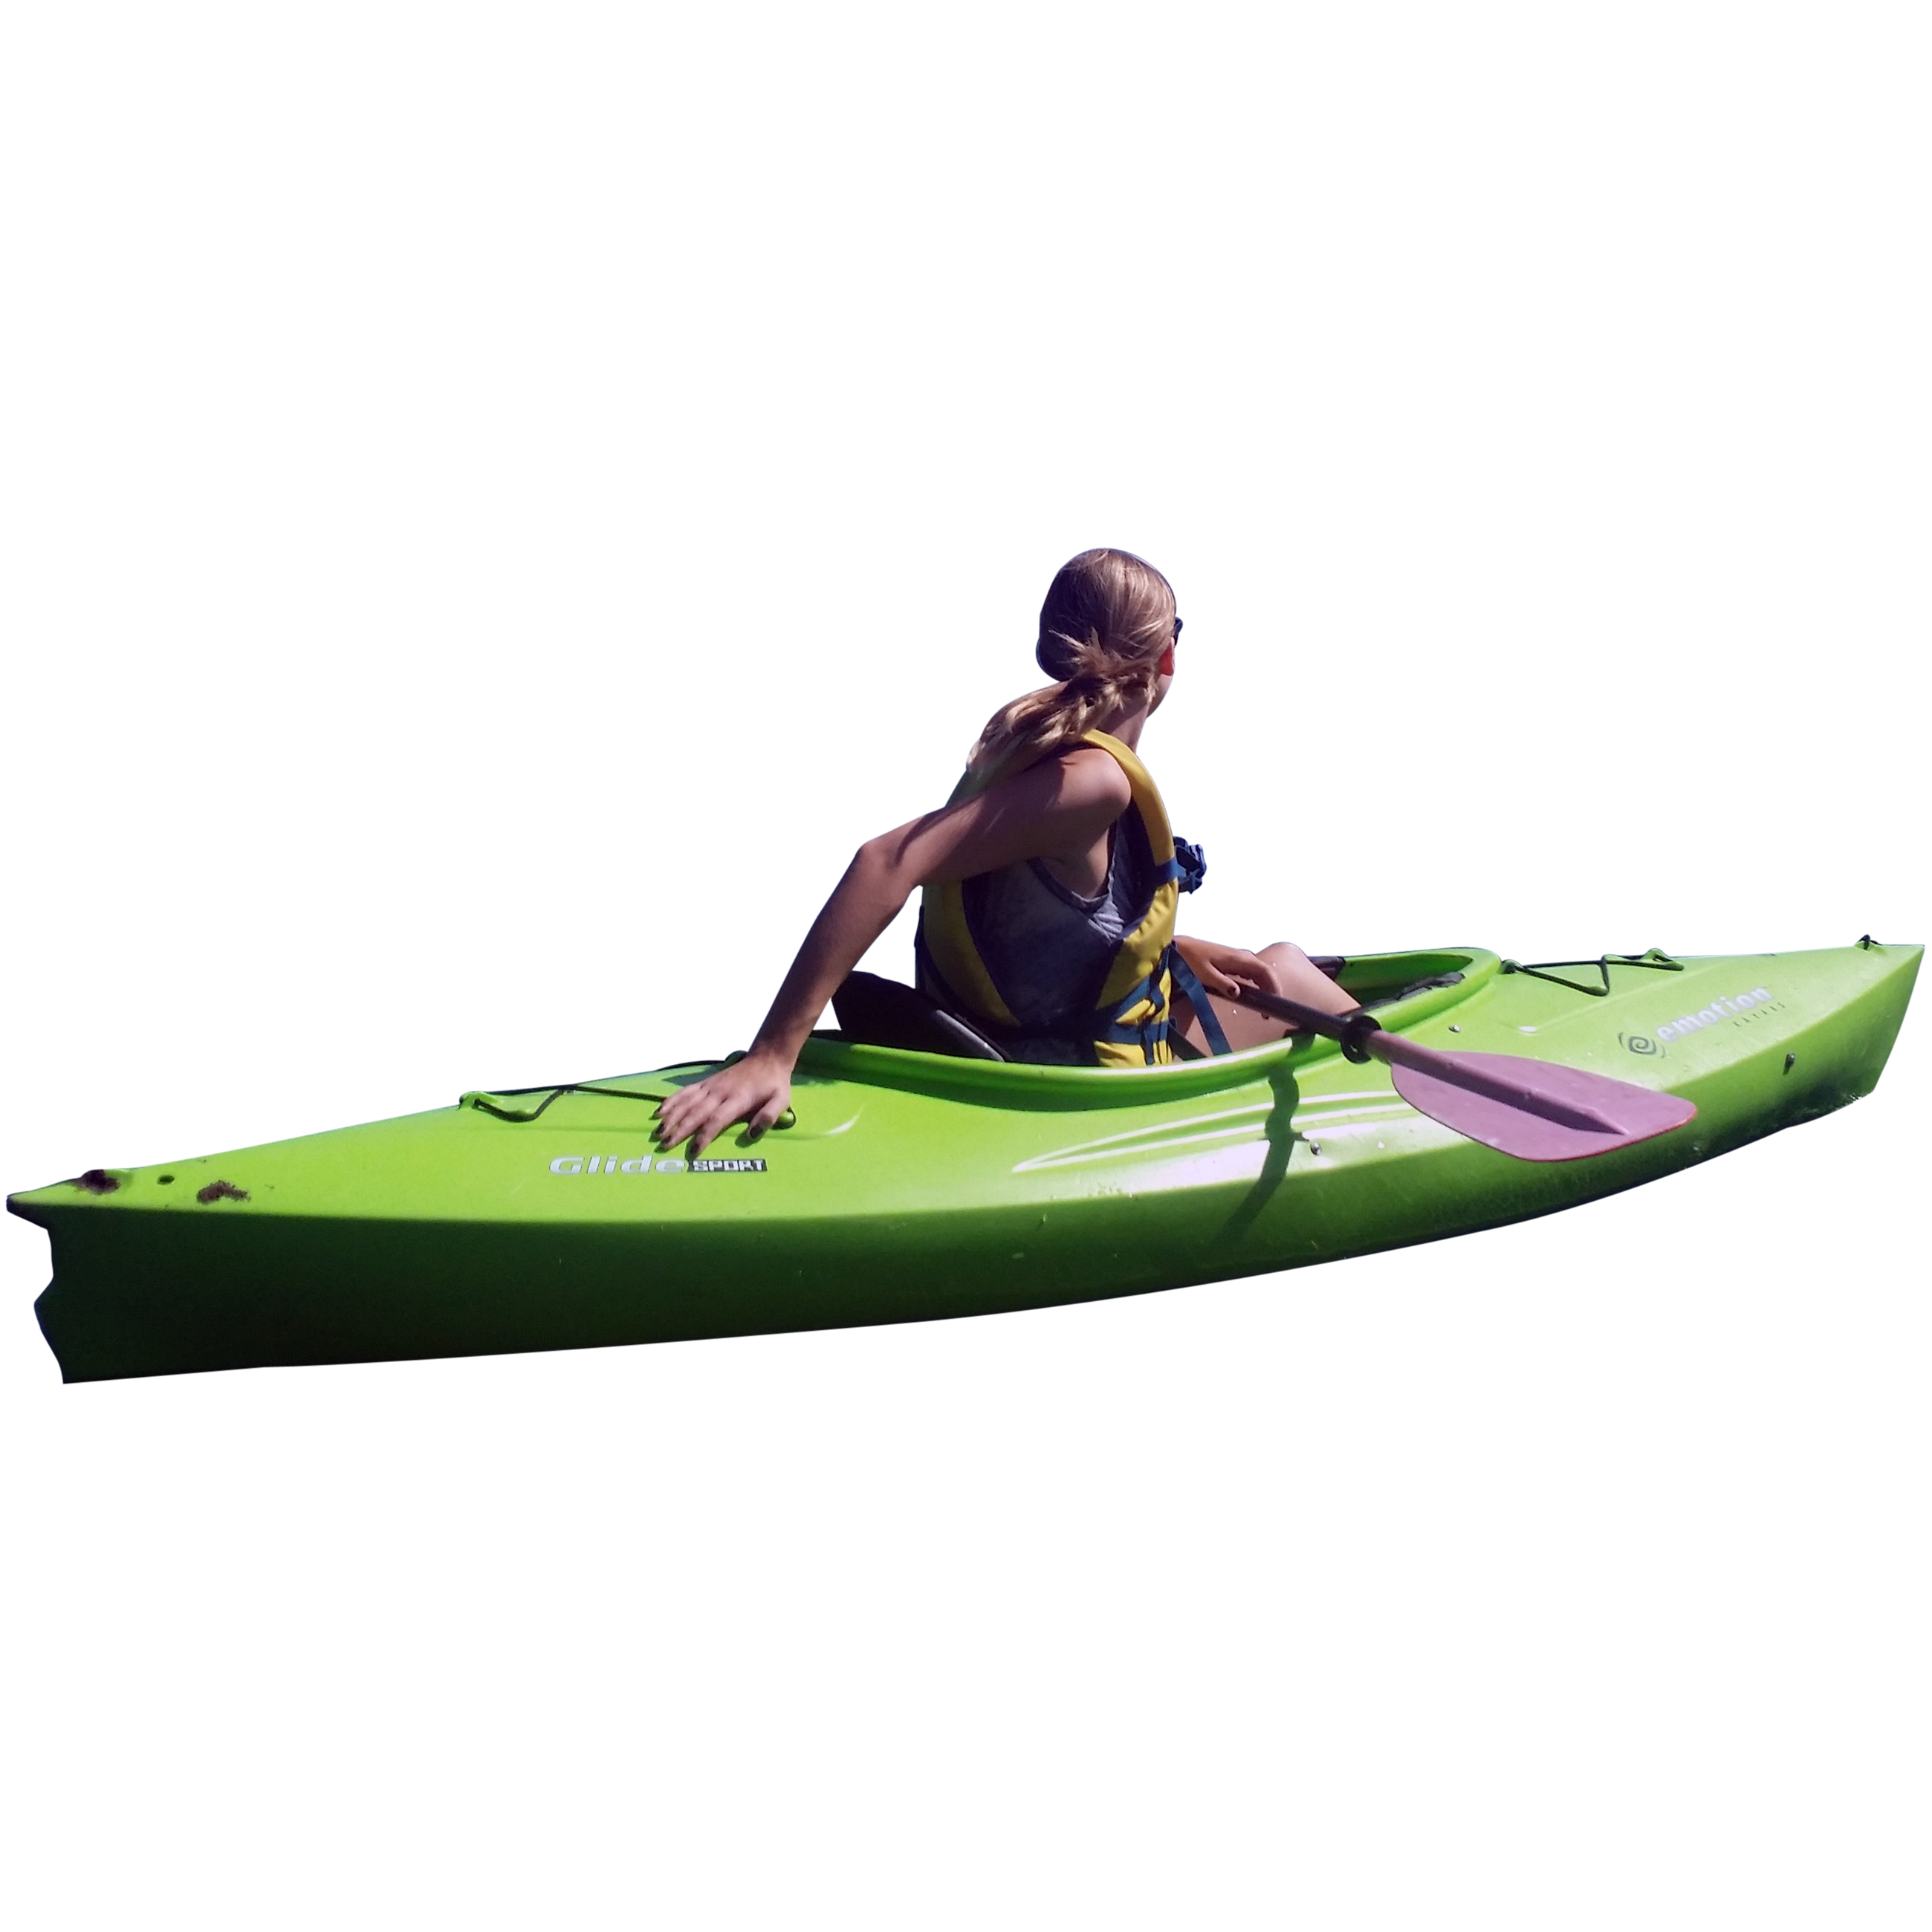 Kayak PNG images free download